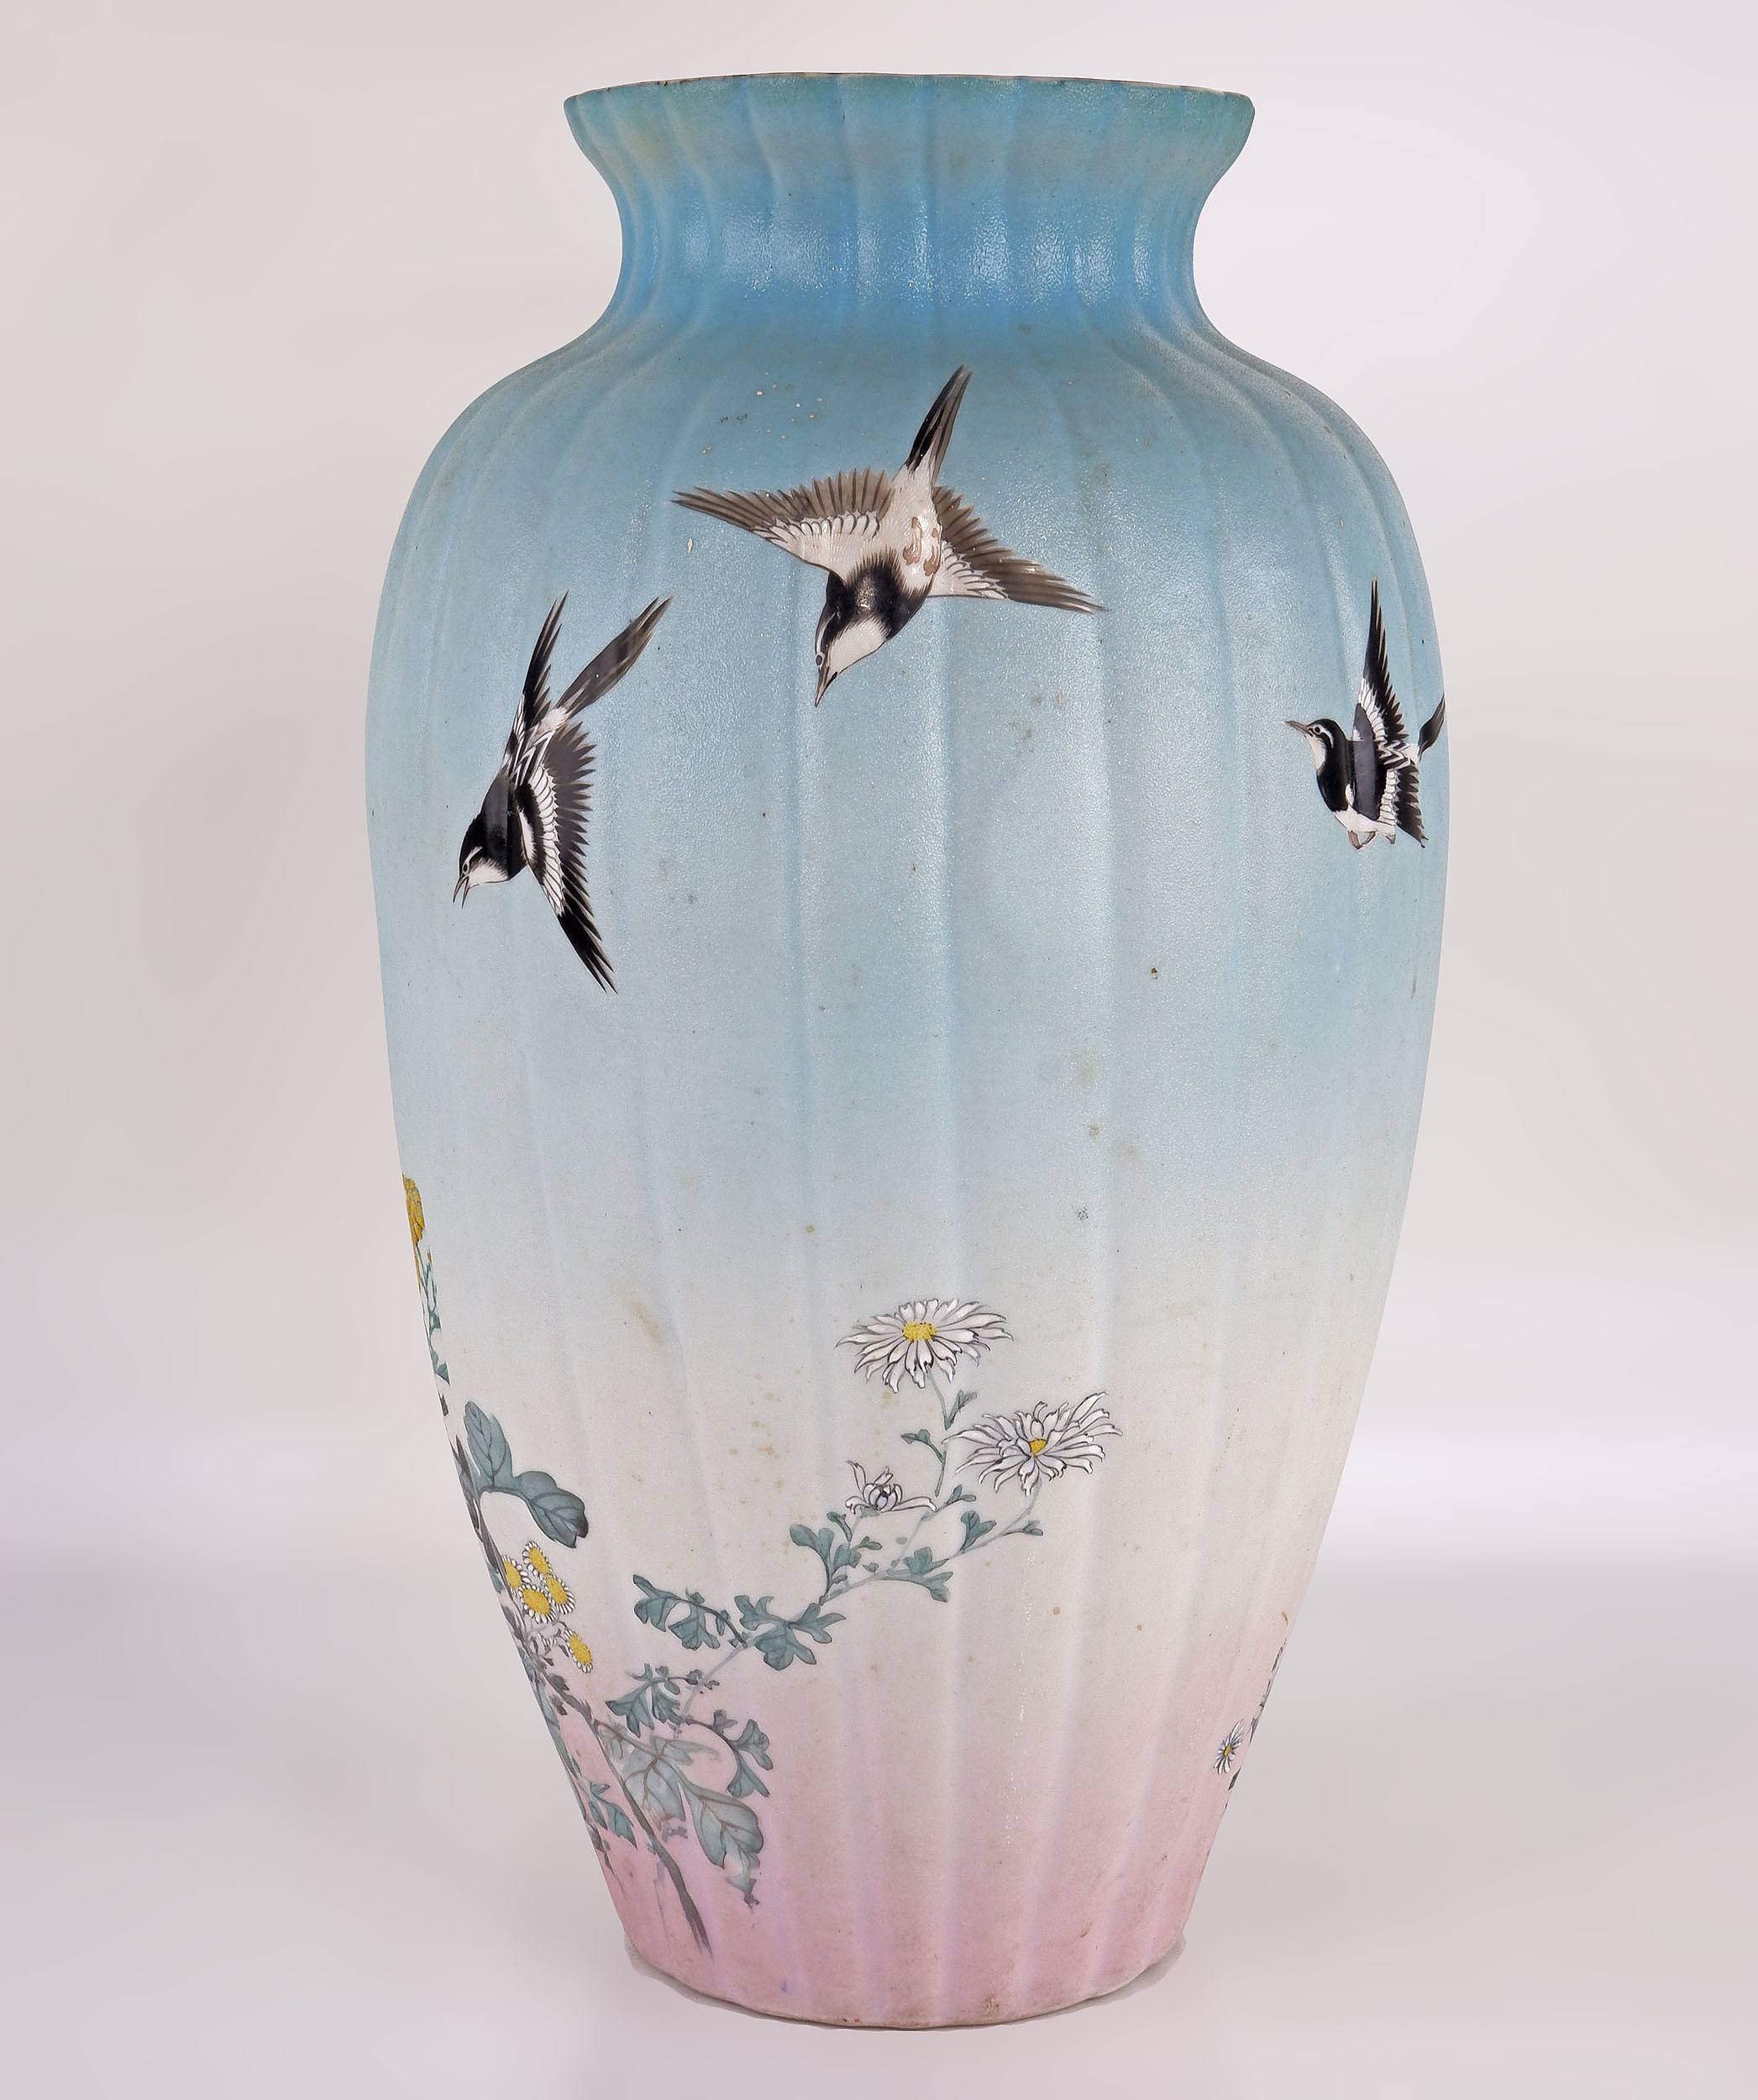 'Japanese Kutani Vase of Exhibition Quality, Early 20th Century'